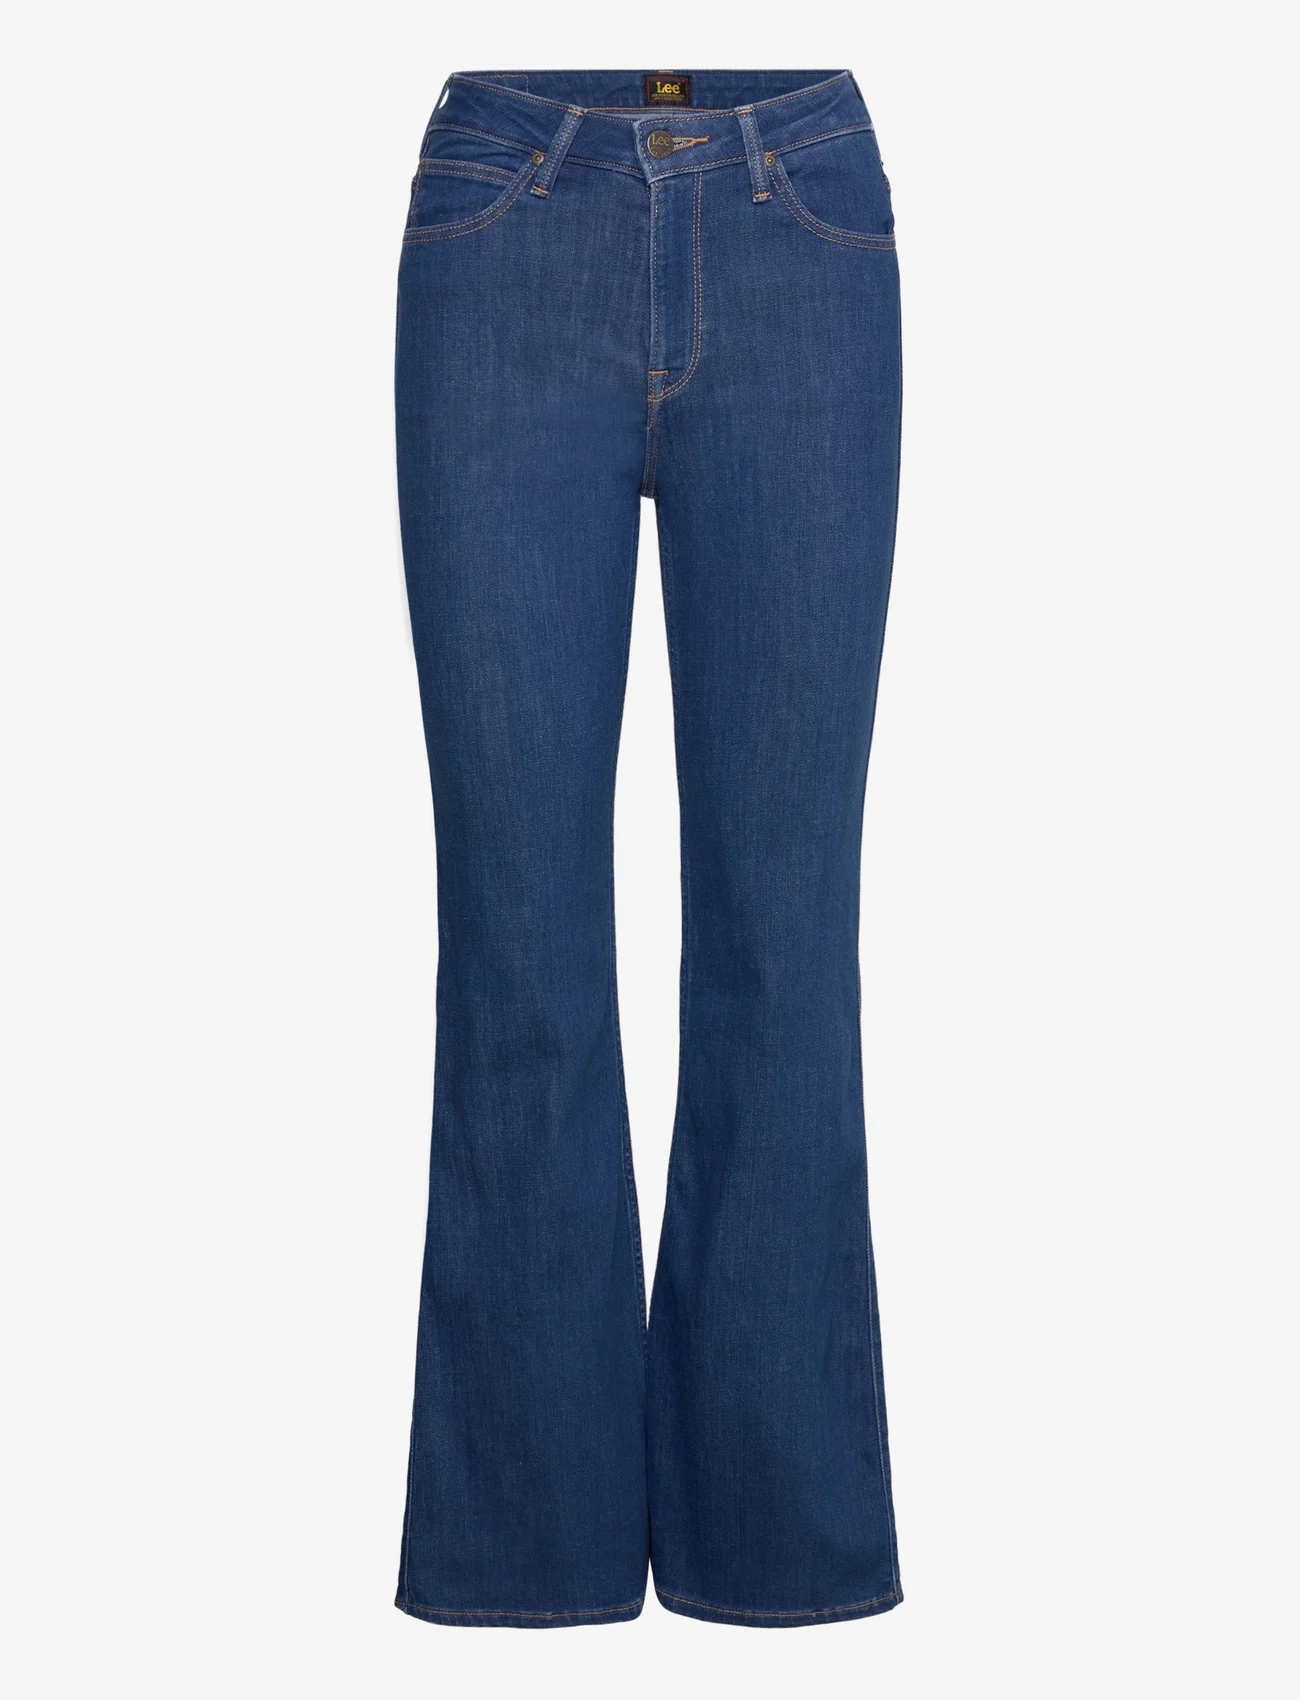 Lee Jeans - BREESE - flared jeans - dark zuri - 0